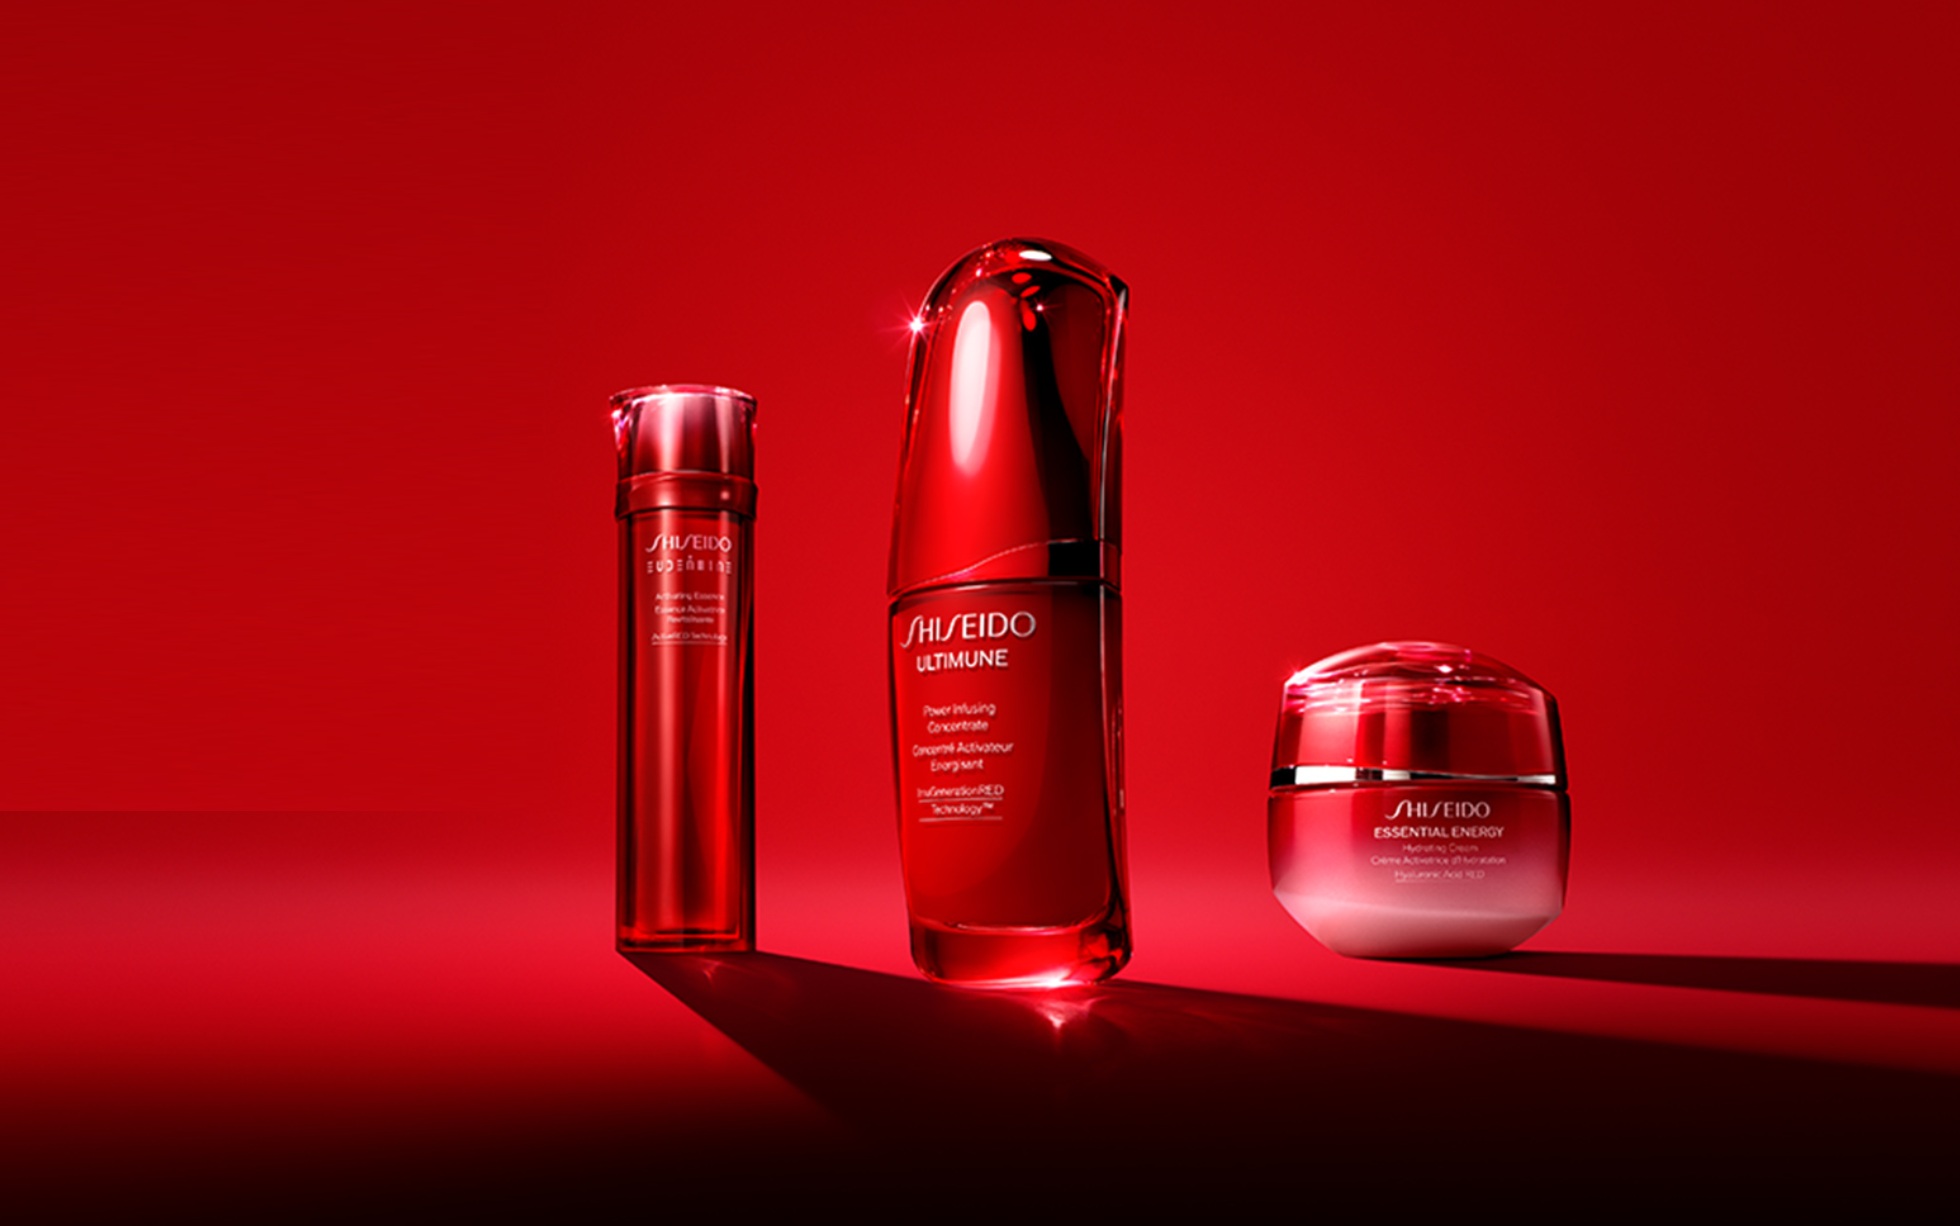 Shiseido kozmetika